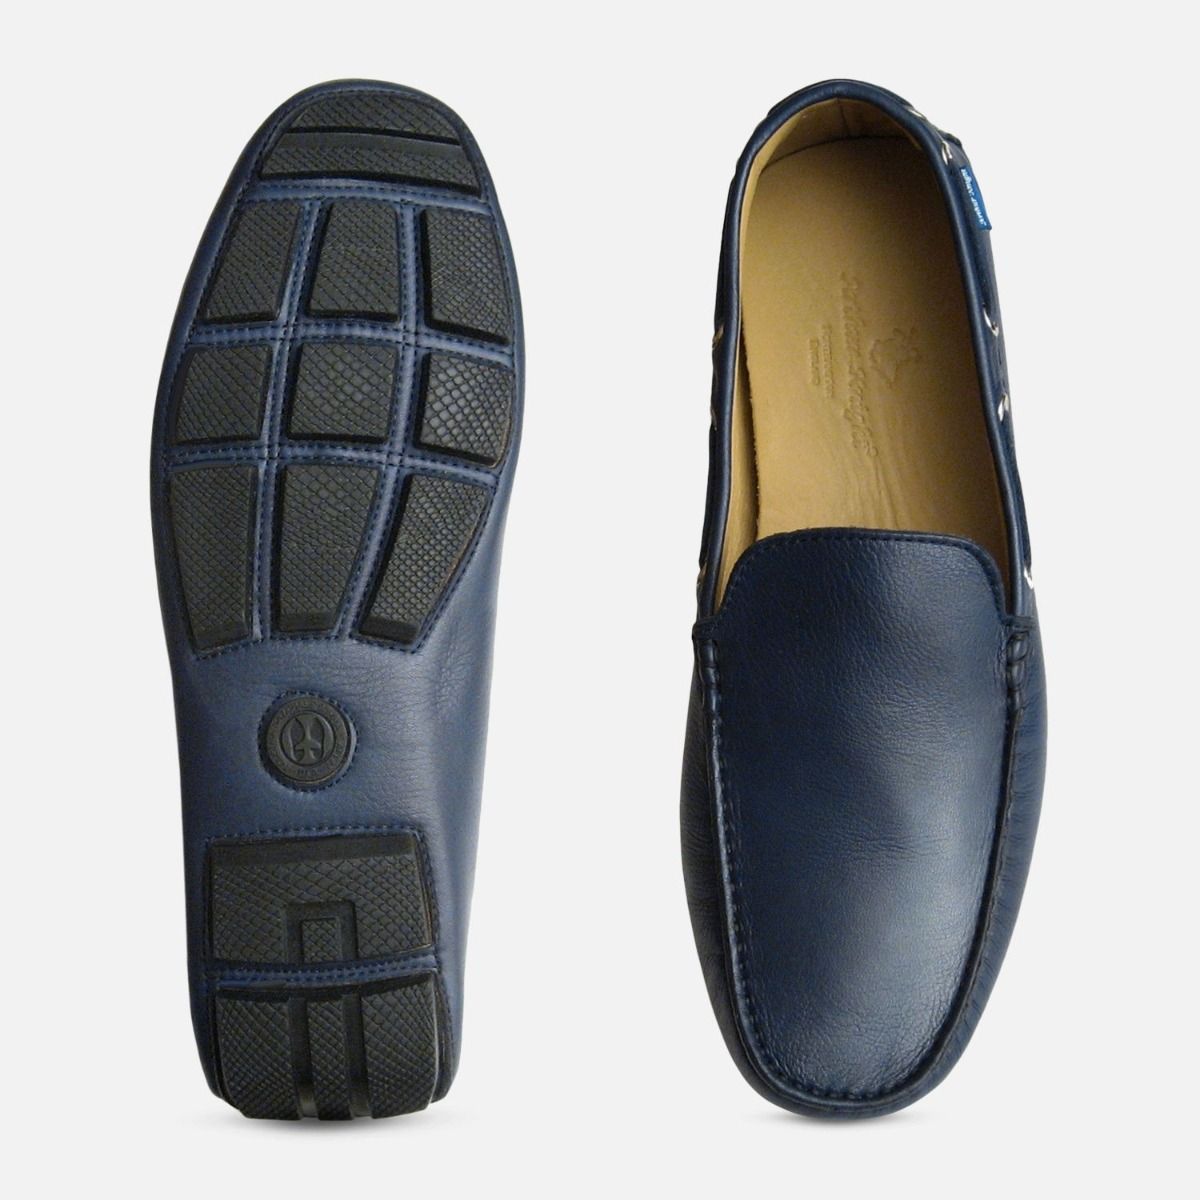 mens blue loafers uk